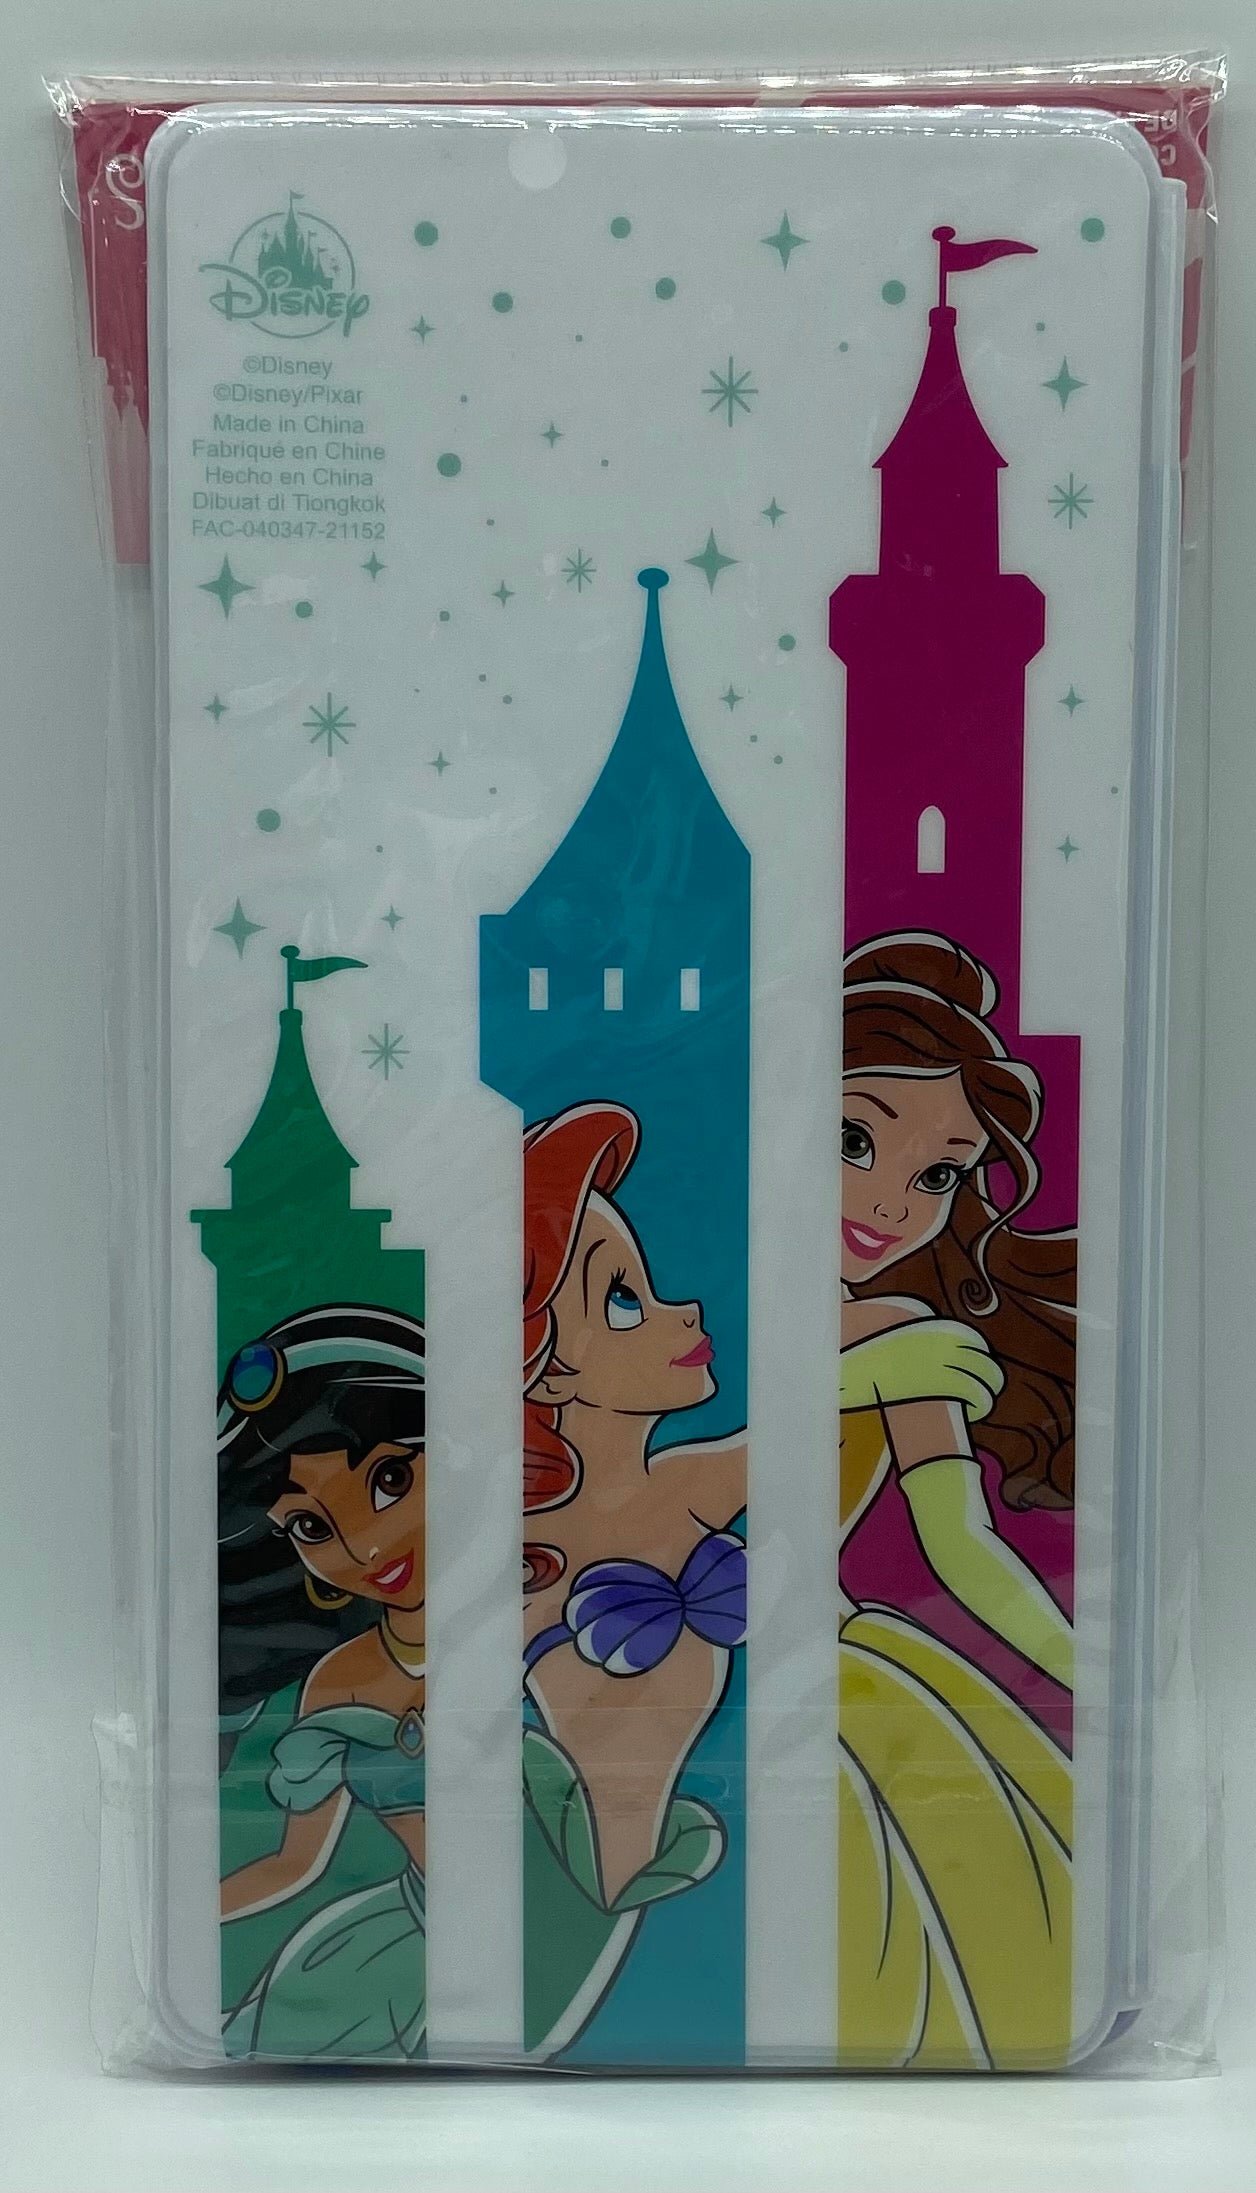 Disney Princess Pressed Coin Collection Holder Ariel Belle Cinderella Aurora New